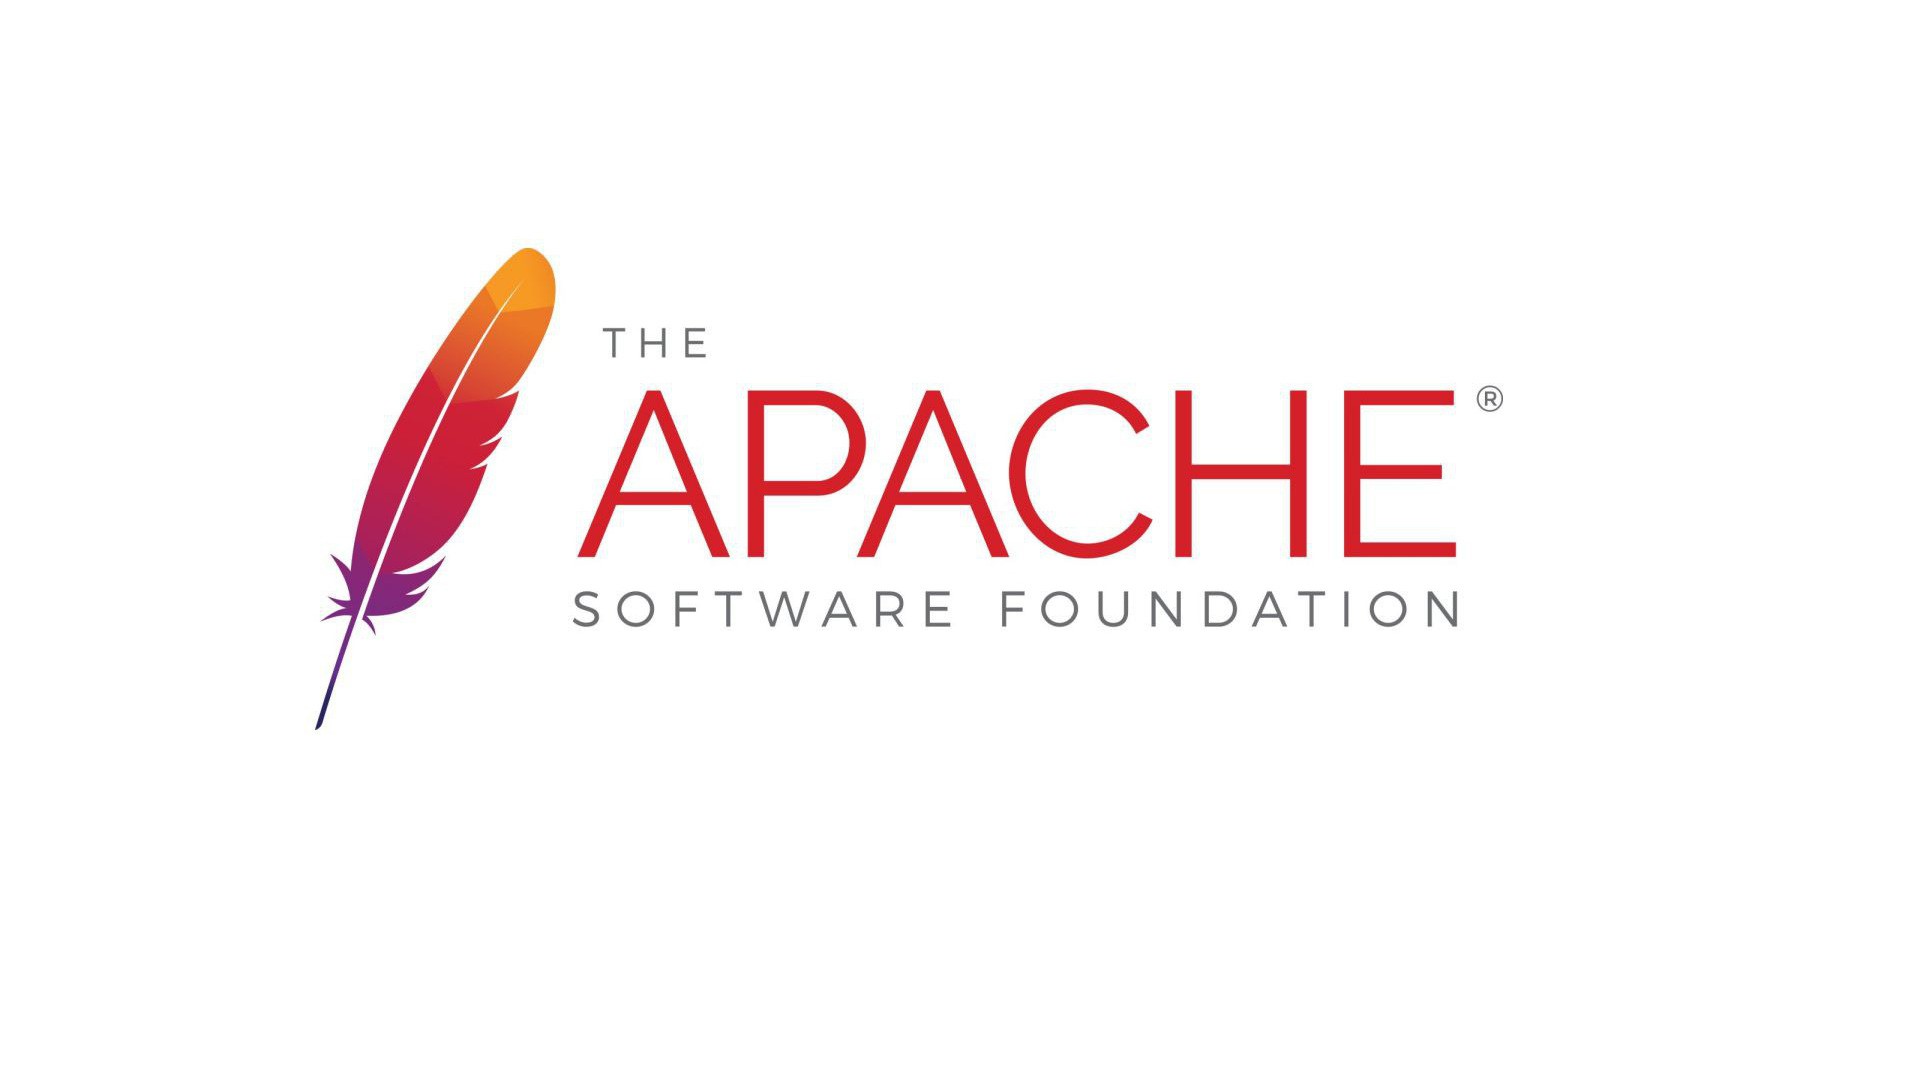 Hướng dẫn chi tiết liệt kê Vhost – Virtual Host trên Apache